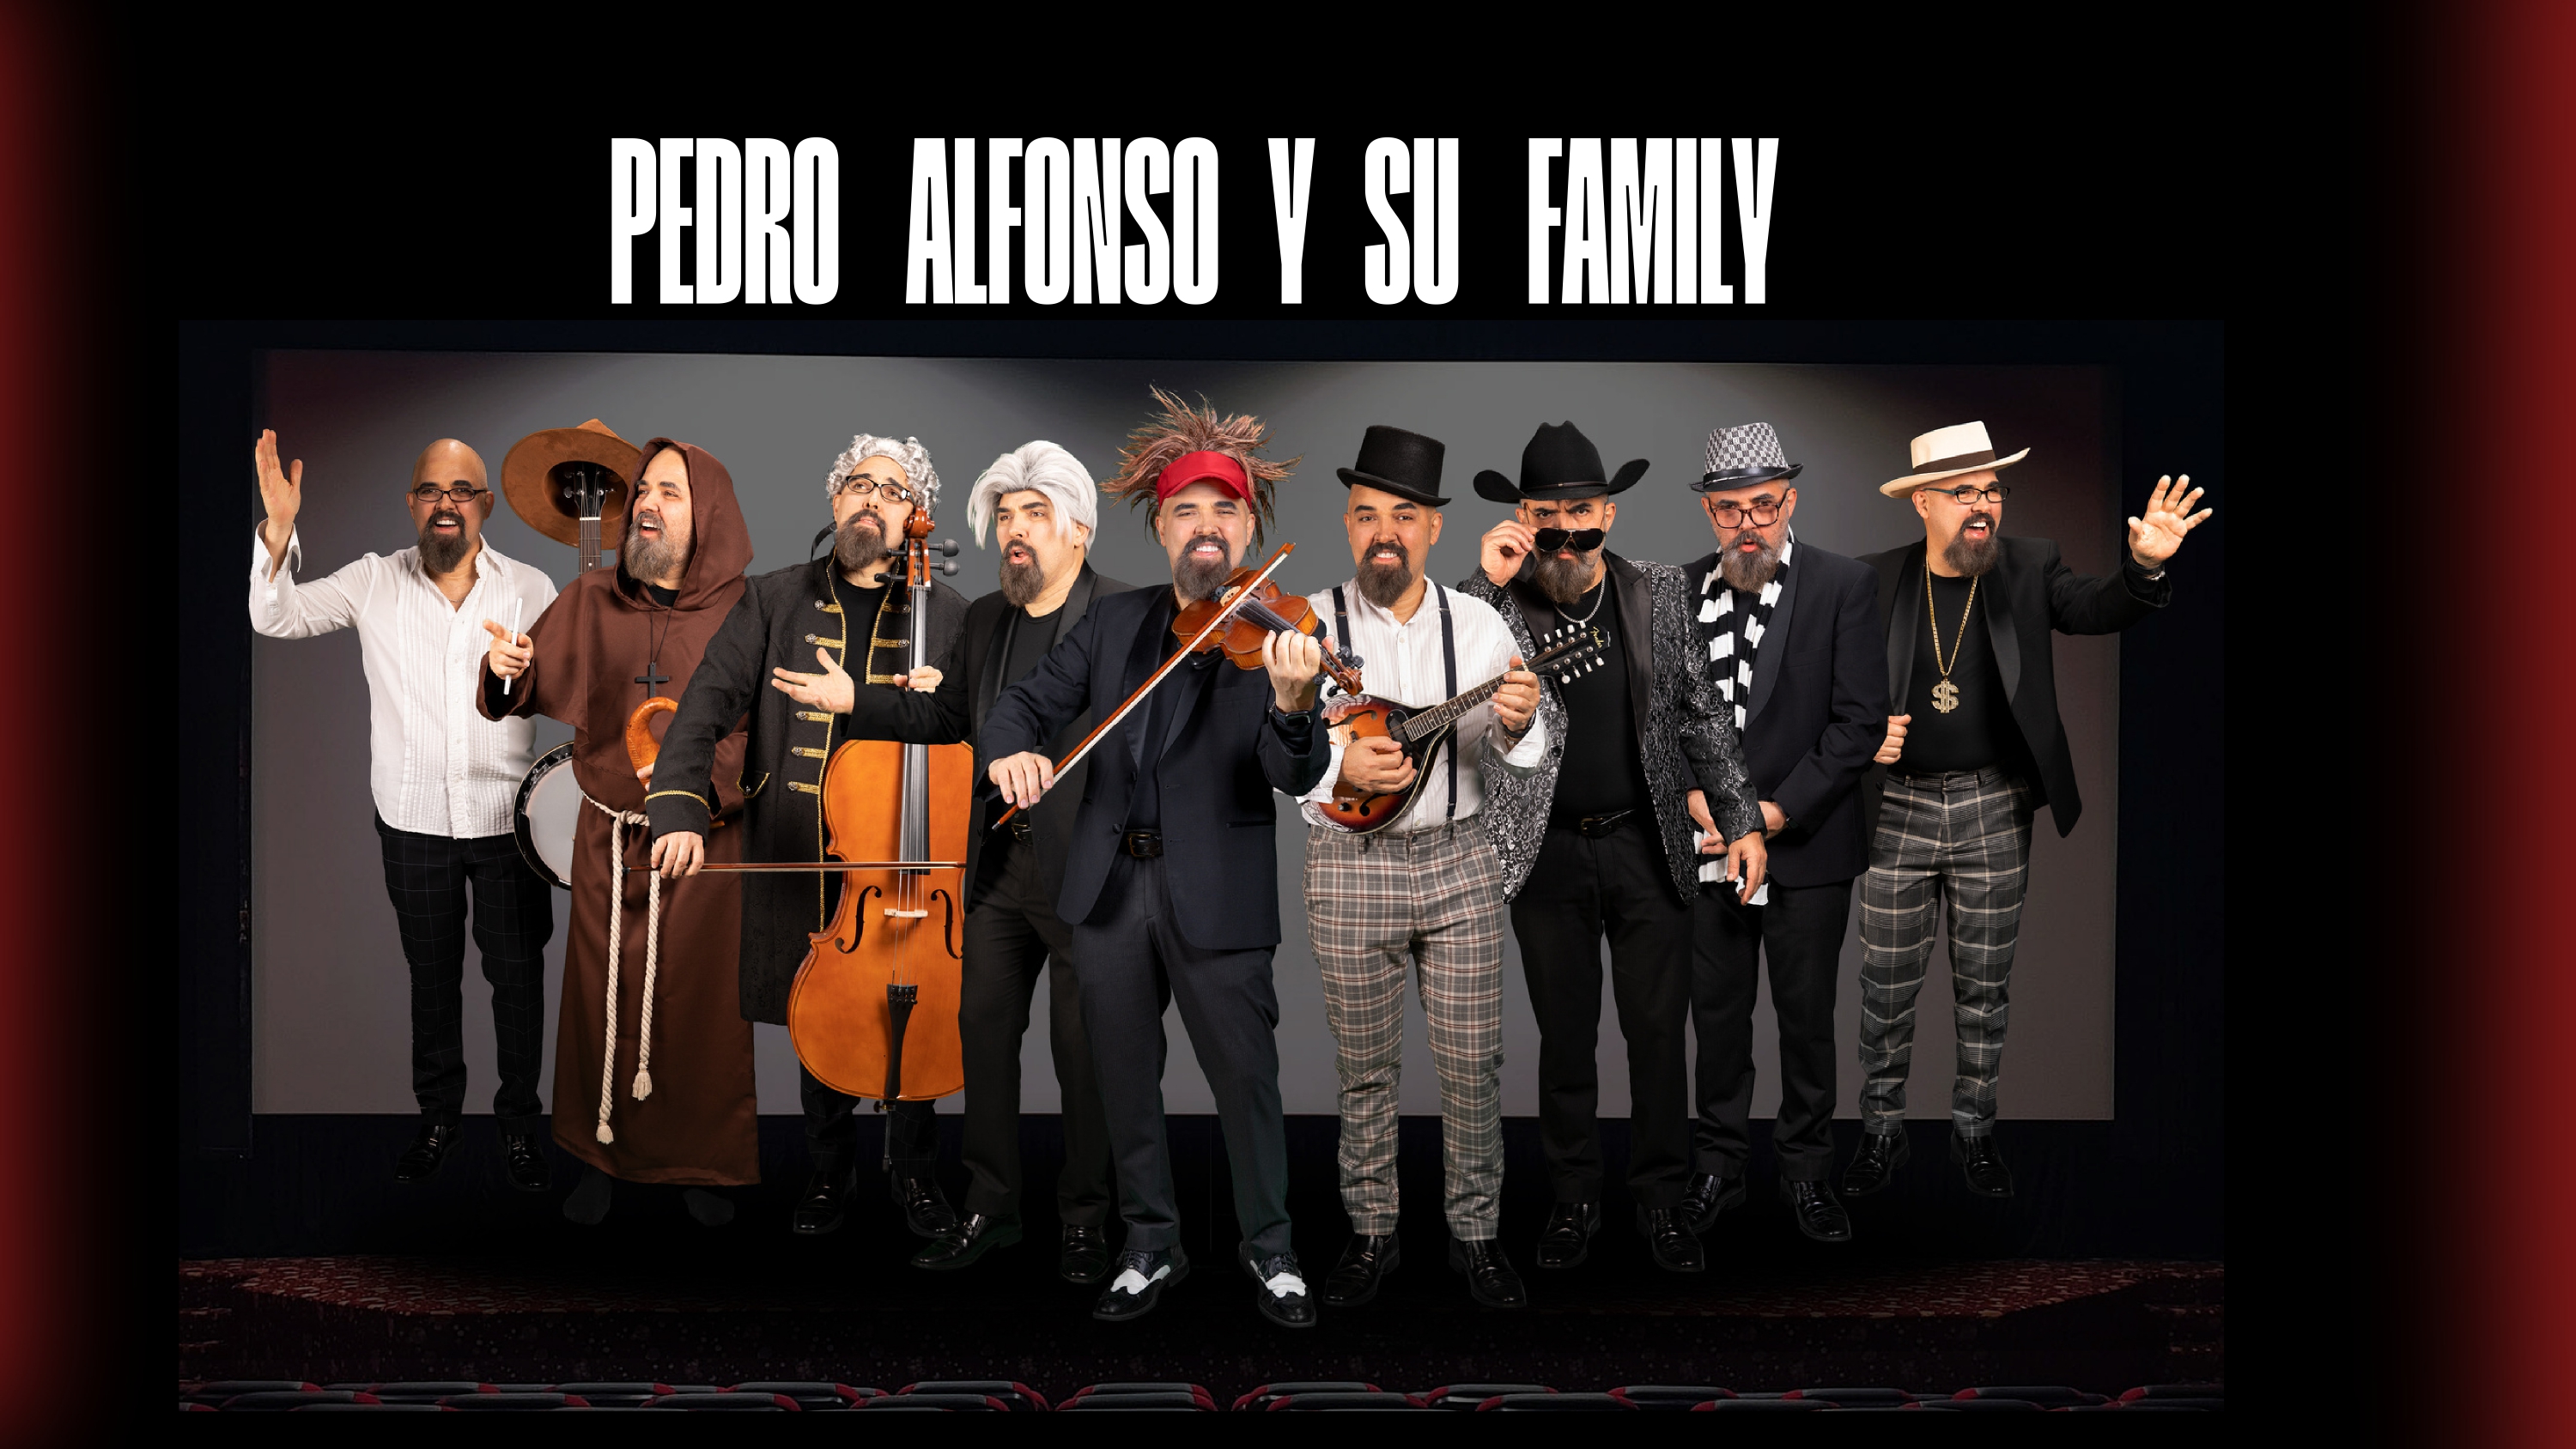 Desde Miami llega a Colombia el show “Pedro Alfonso y su Family”